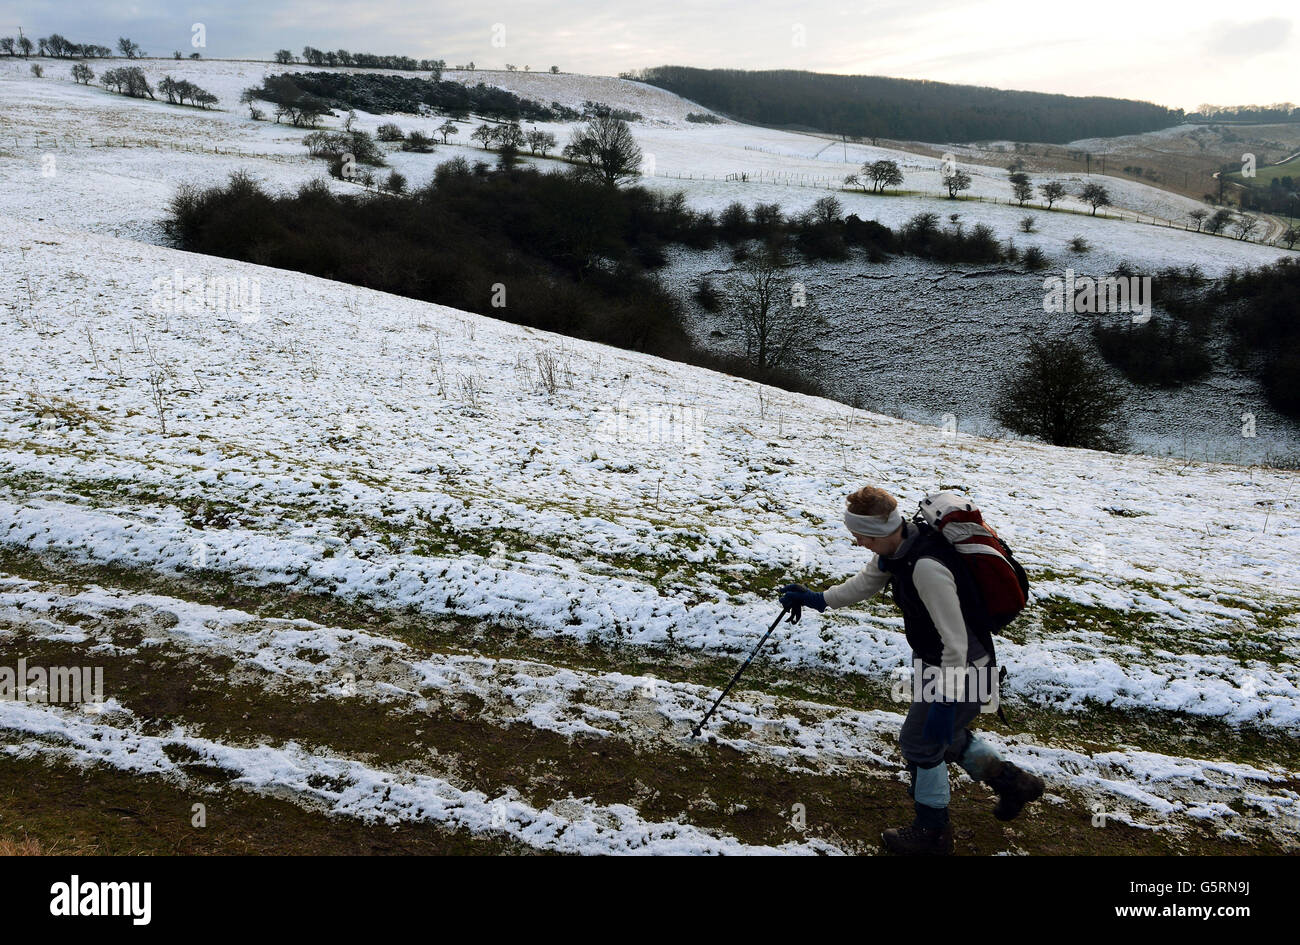 La neve sul terreno alto dei Wolds dello Yorkshire ai pascoli di Millington, vicino a Pocklington, dà ad un camminatore un assaggio del tempo invernale e della neve che si prevede di effettuare molte zone del Regno Unito nei prossimi giorni. Foto Stock